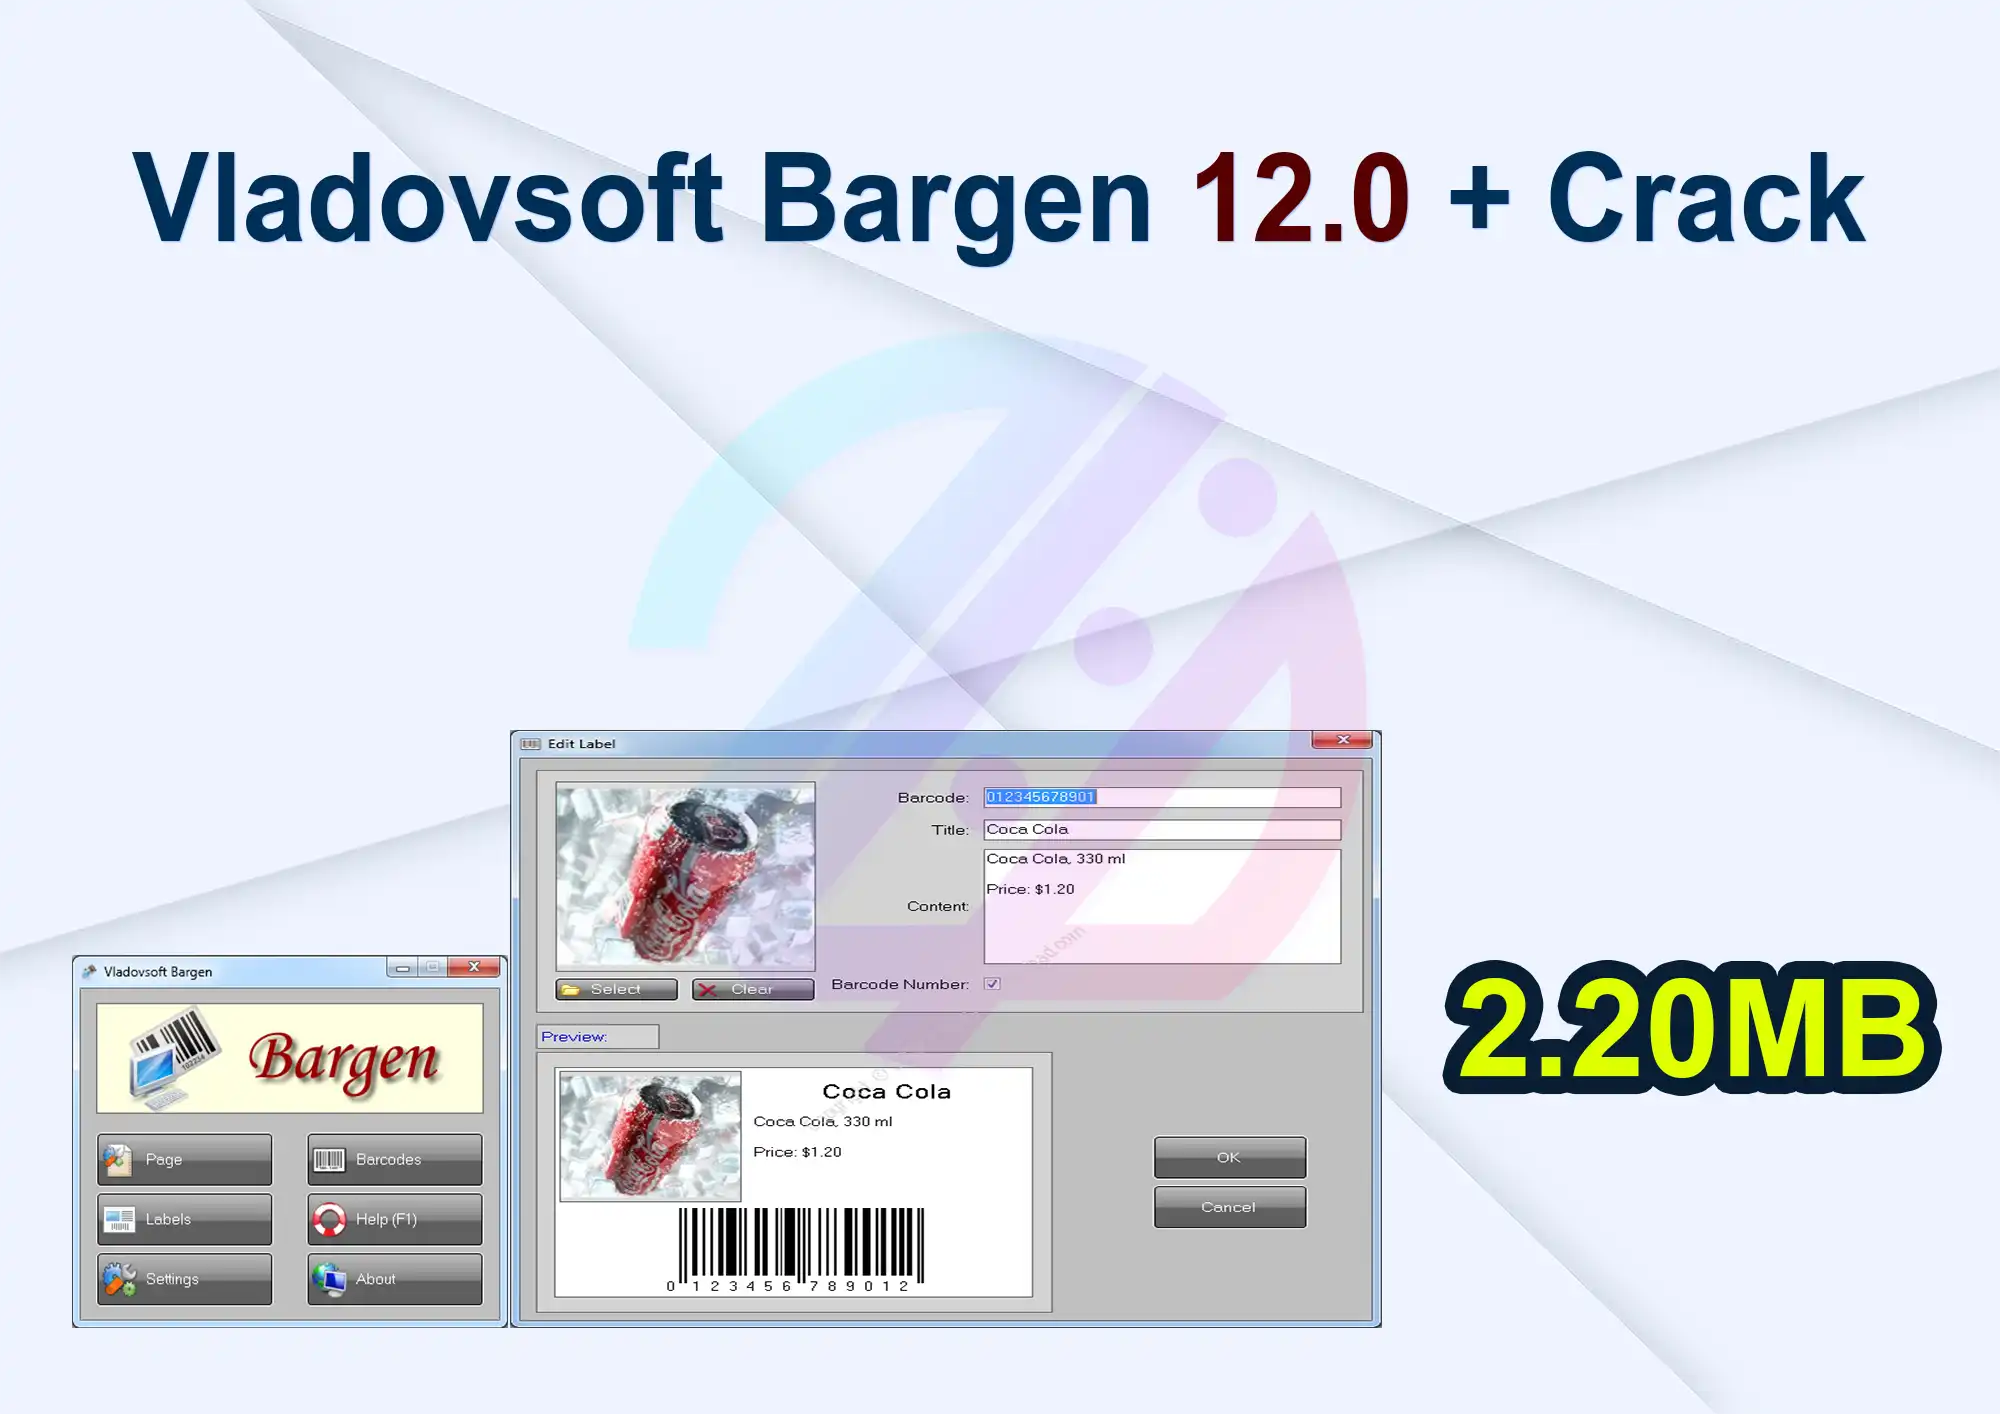 Vladovsoft Bargen 12.0 + Crack